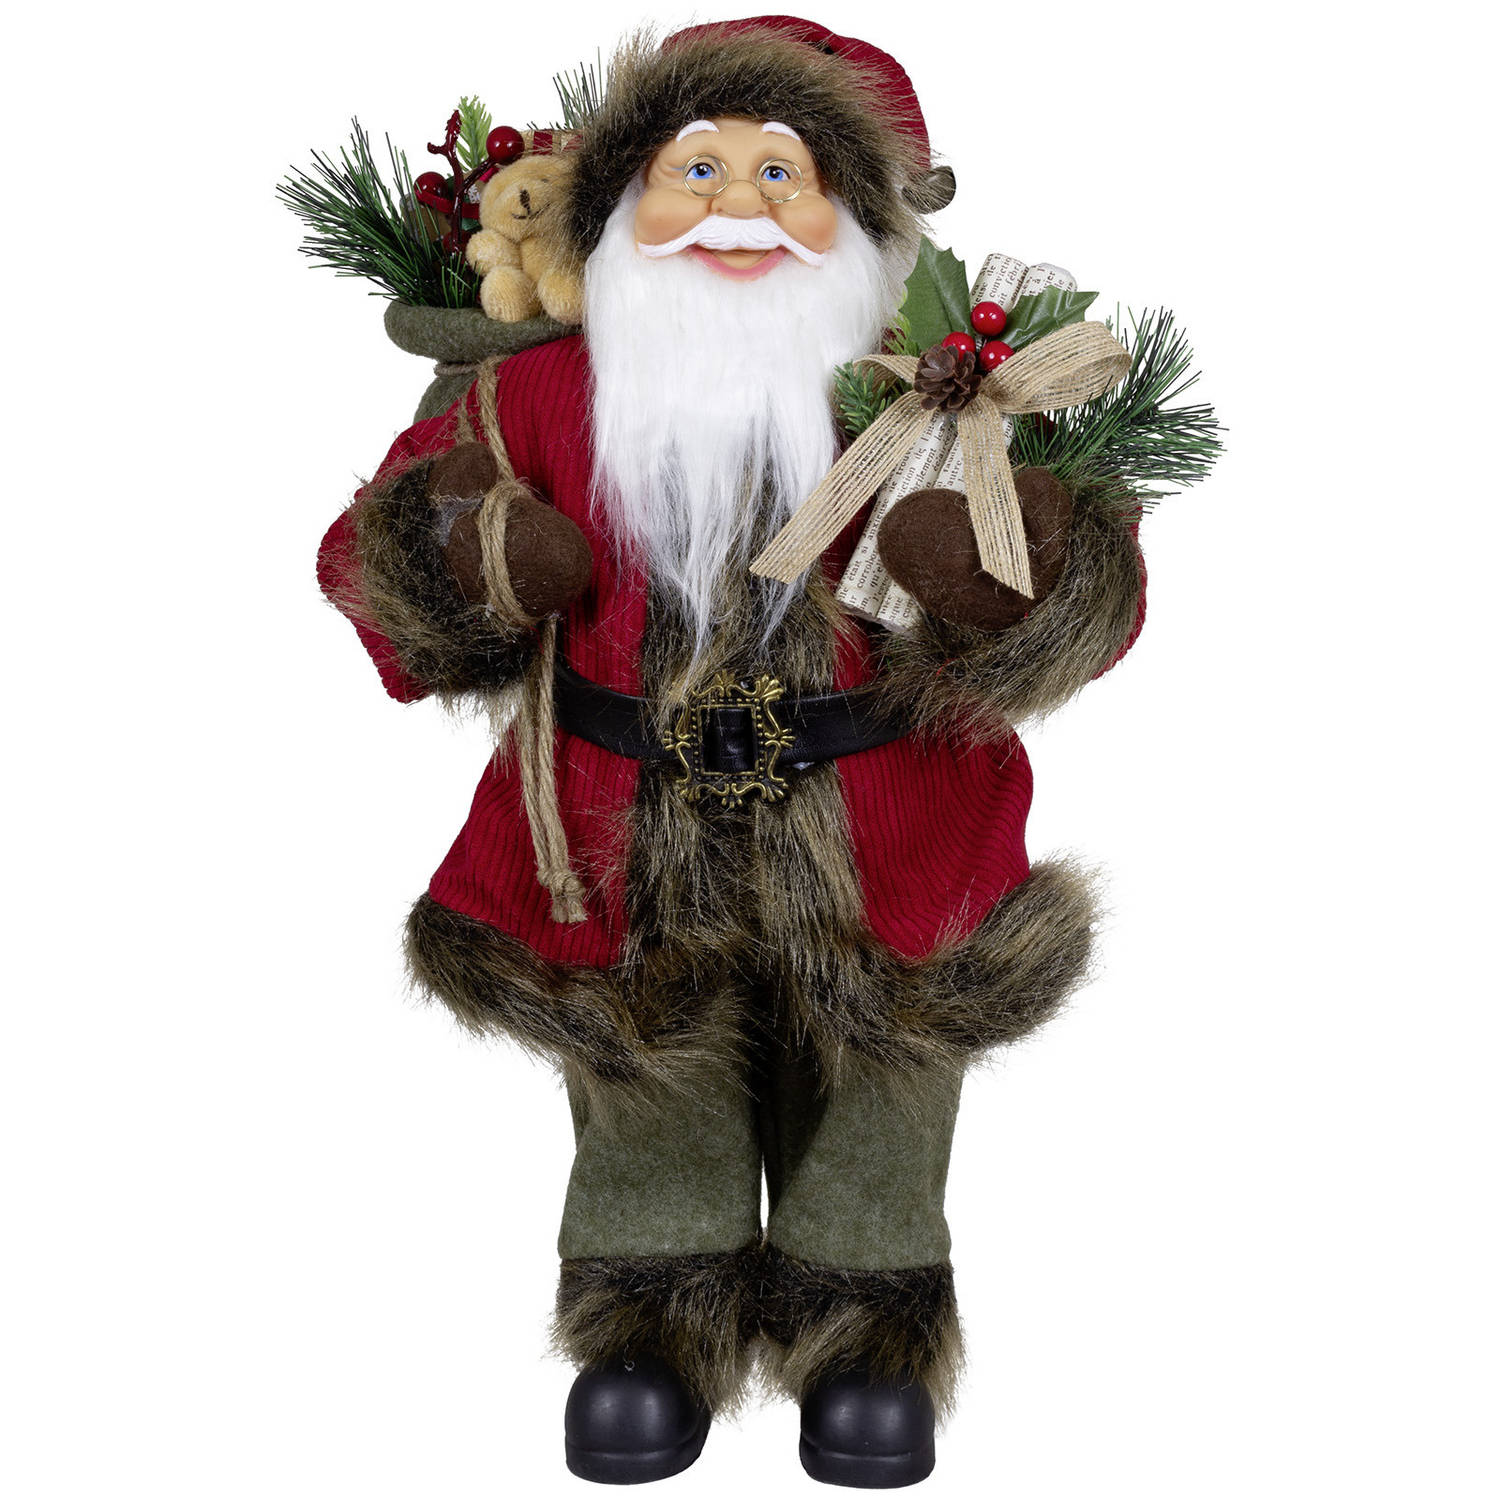 Kerstman decoratie pop - Hendrik - H45 cm - rood - staand - kerst beeld - kerst figuur